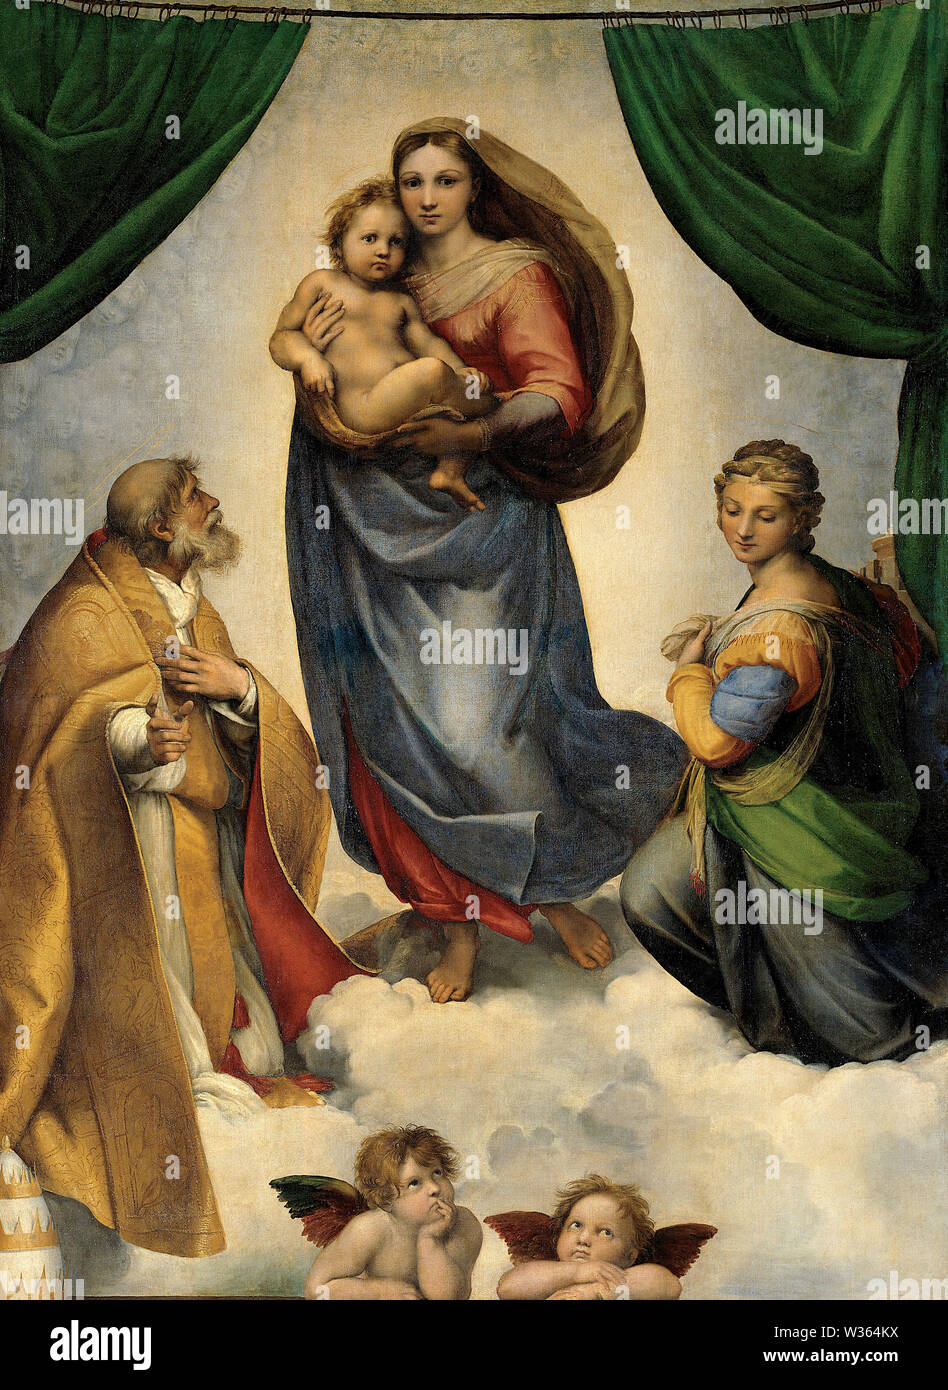 La Madonna Sistina (Madonna di San Sisto) (1512) dipinto di Raffaello (Raffaello Sanzio da Urbino) - immagine Di Altissima risoluzione e qualità Foto Stock